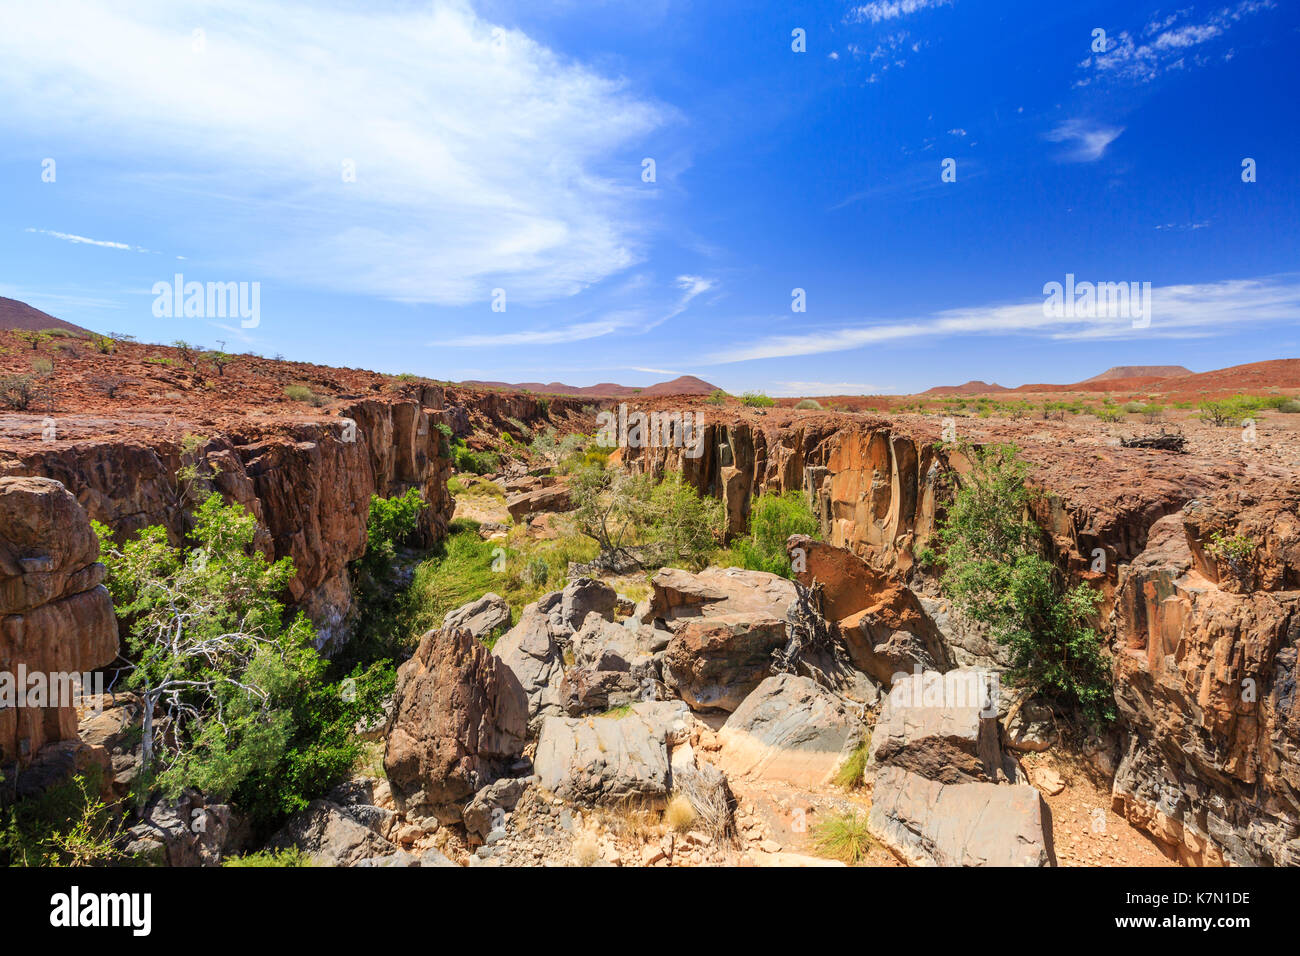 Aub-canyon, palmwag concession, damaraland, Namibie, région de Kunene Banque D'Images